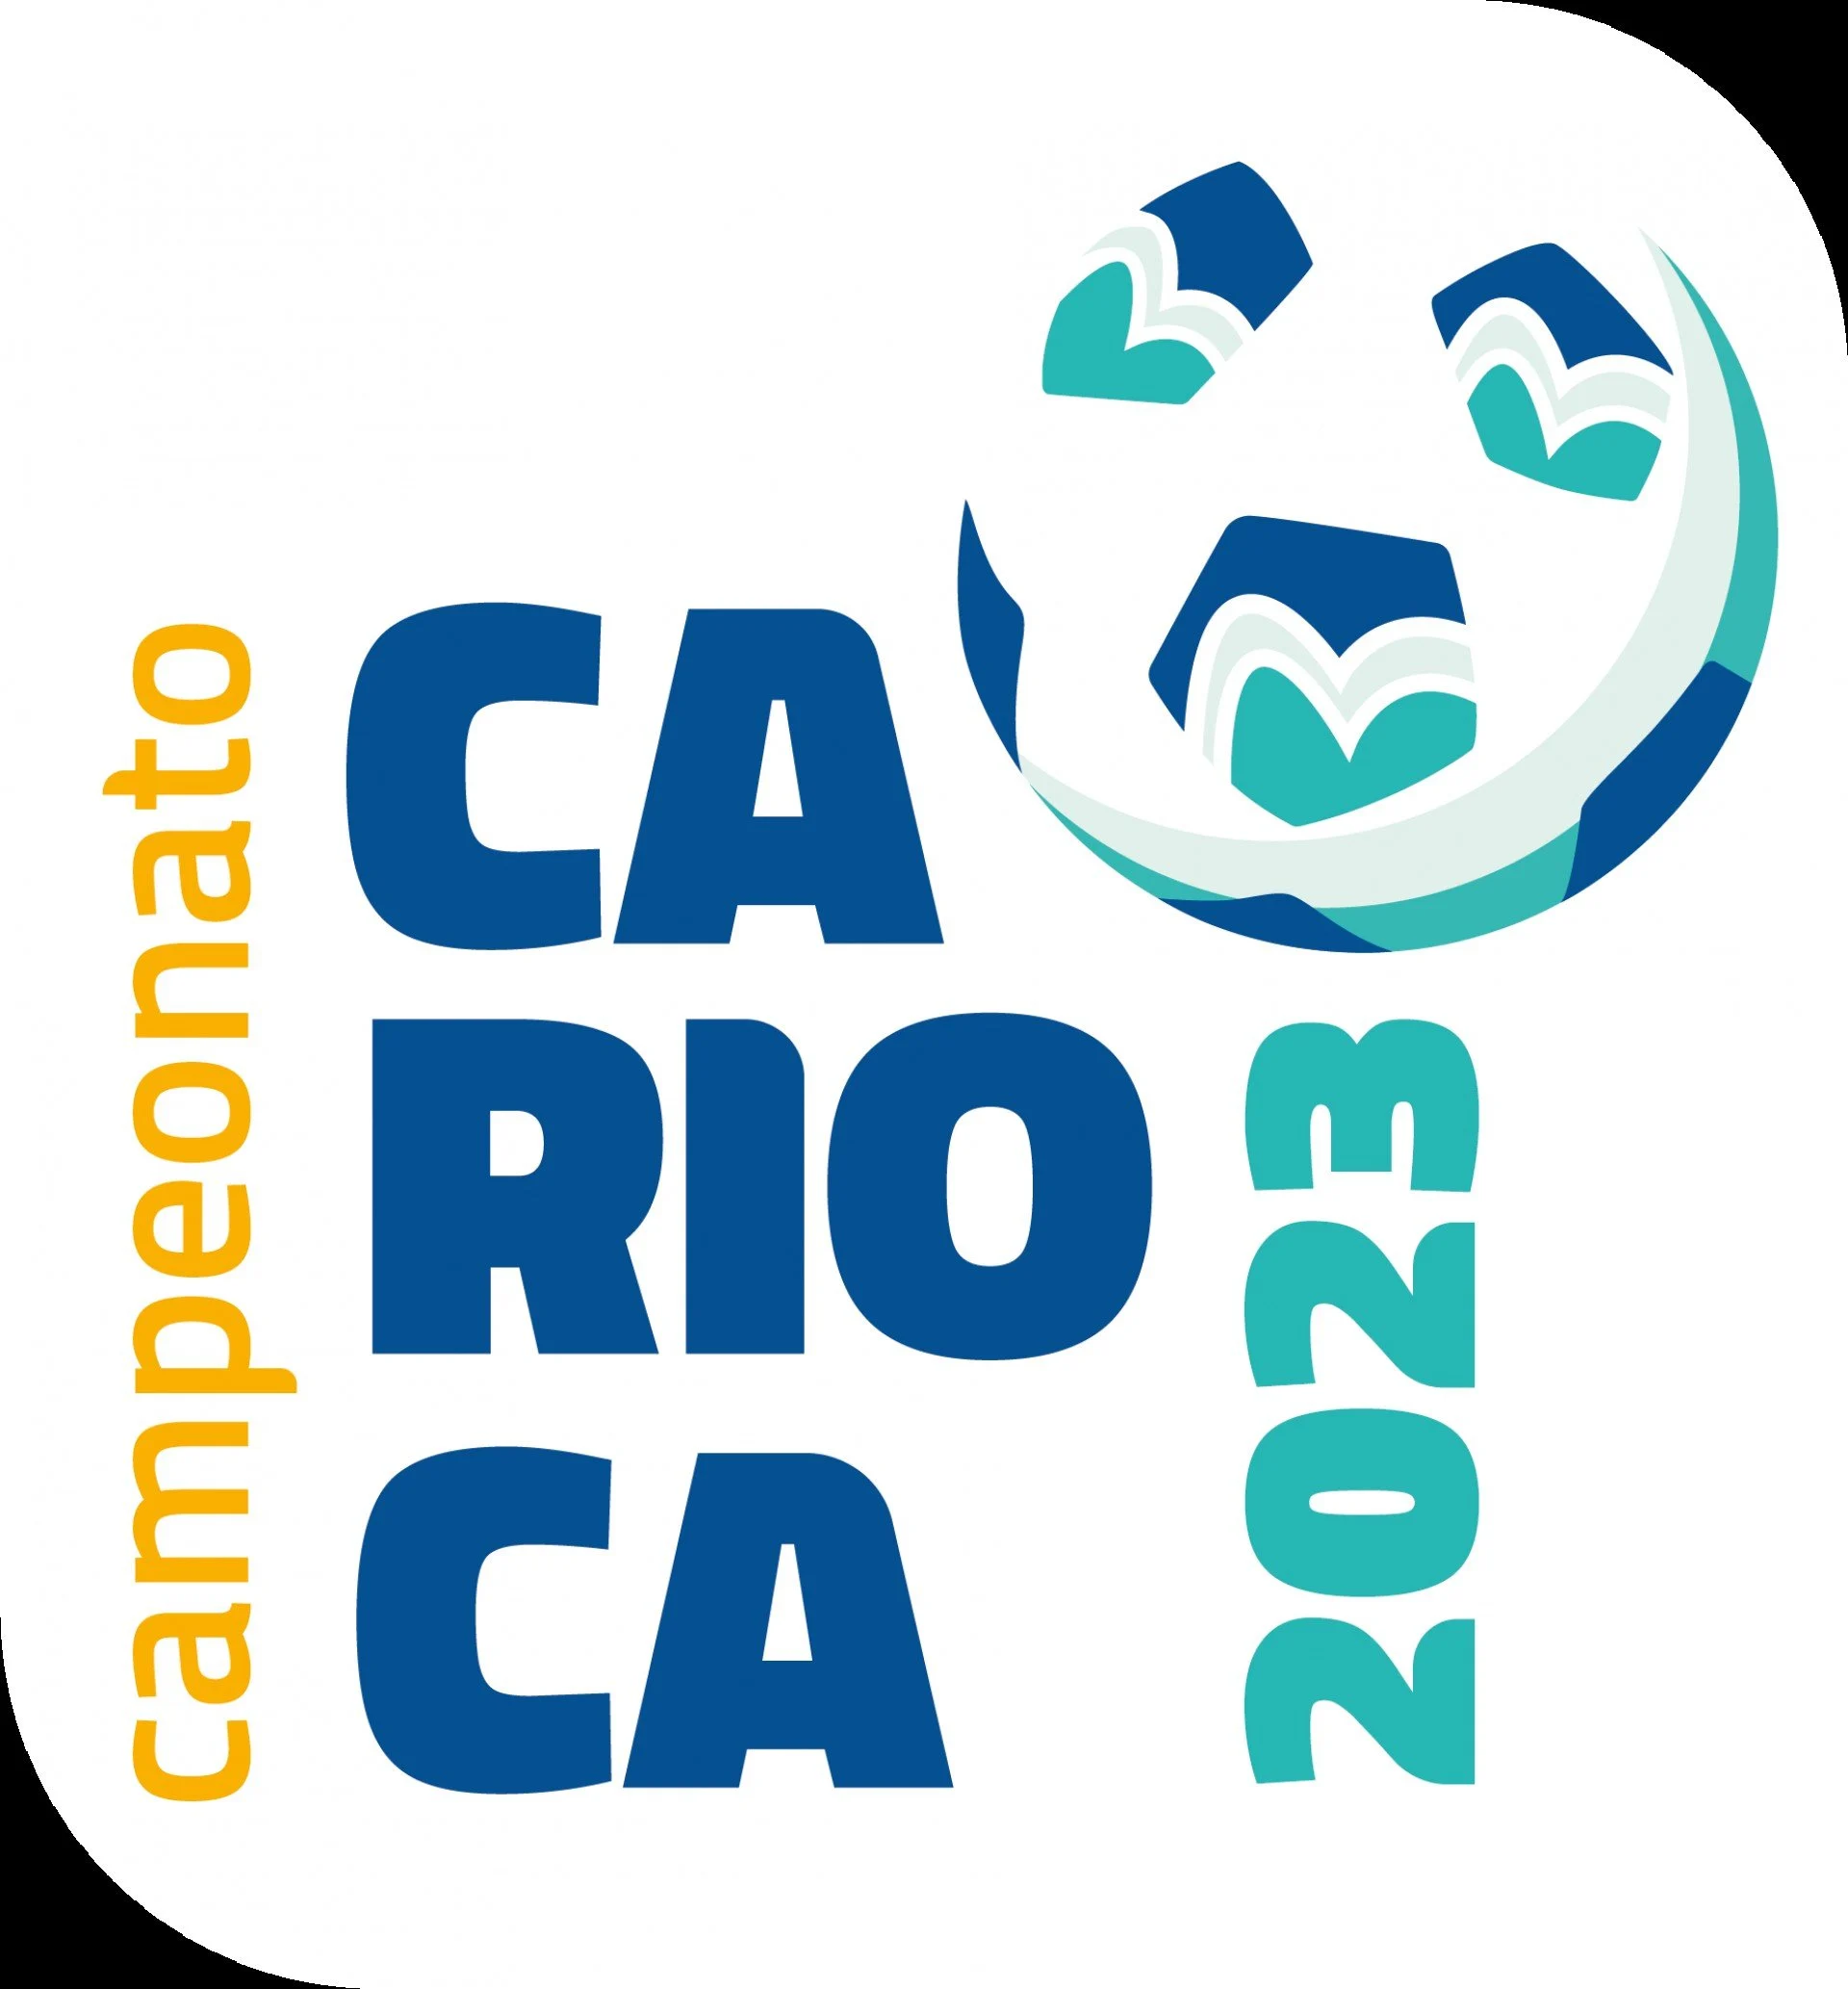 Campeonato Carioca Jogos De Hoje